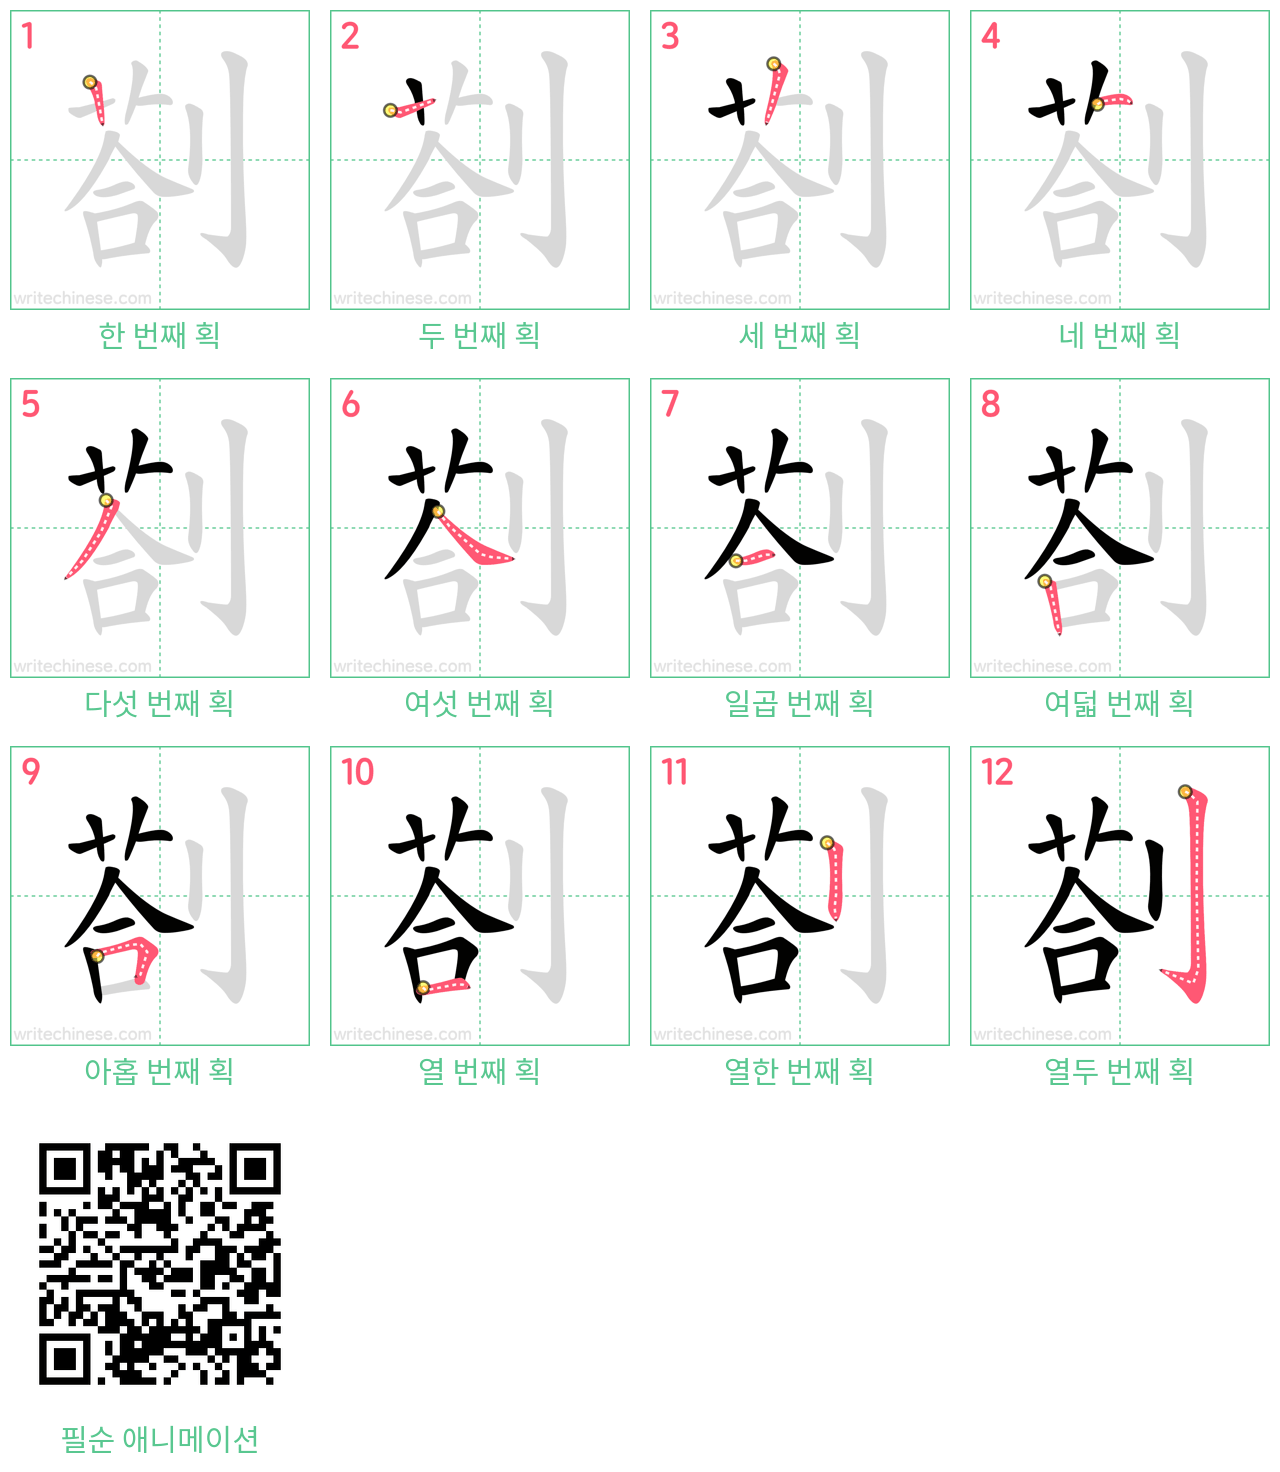 剳 step-by-step stroke order diagrams